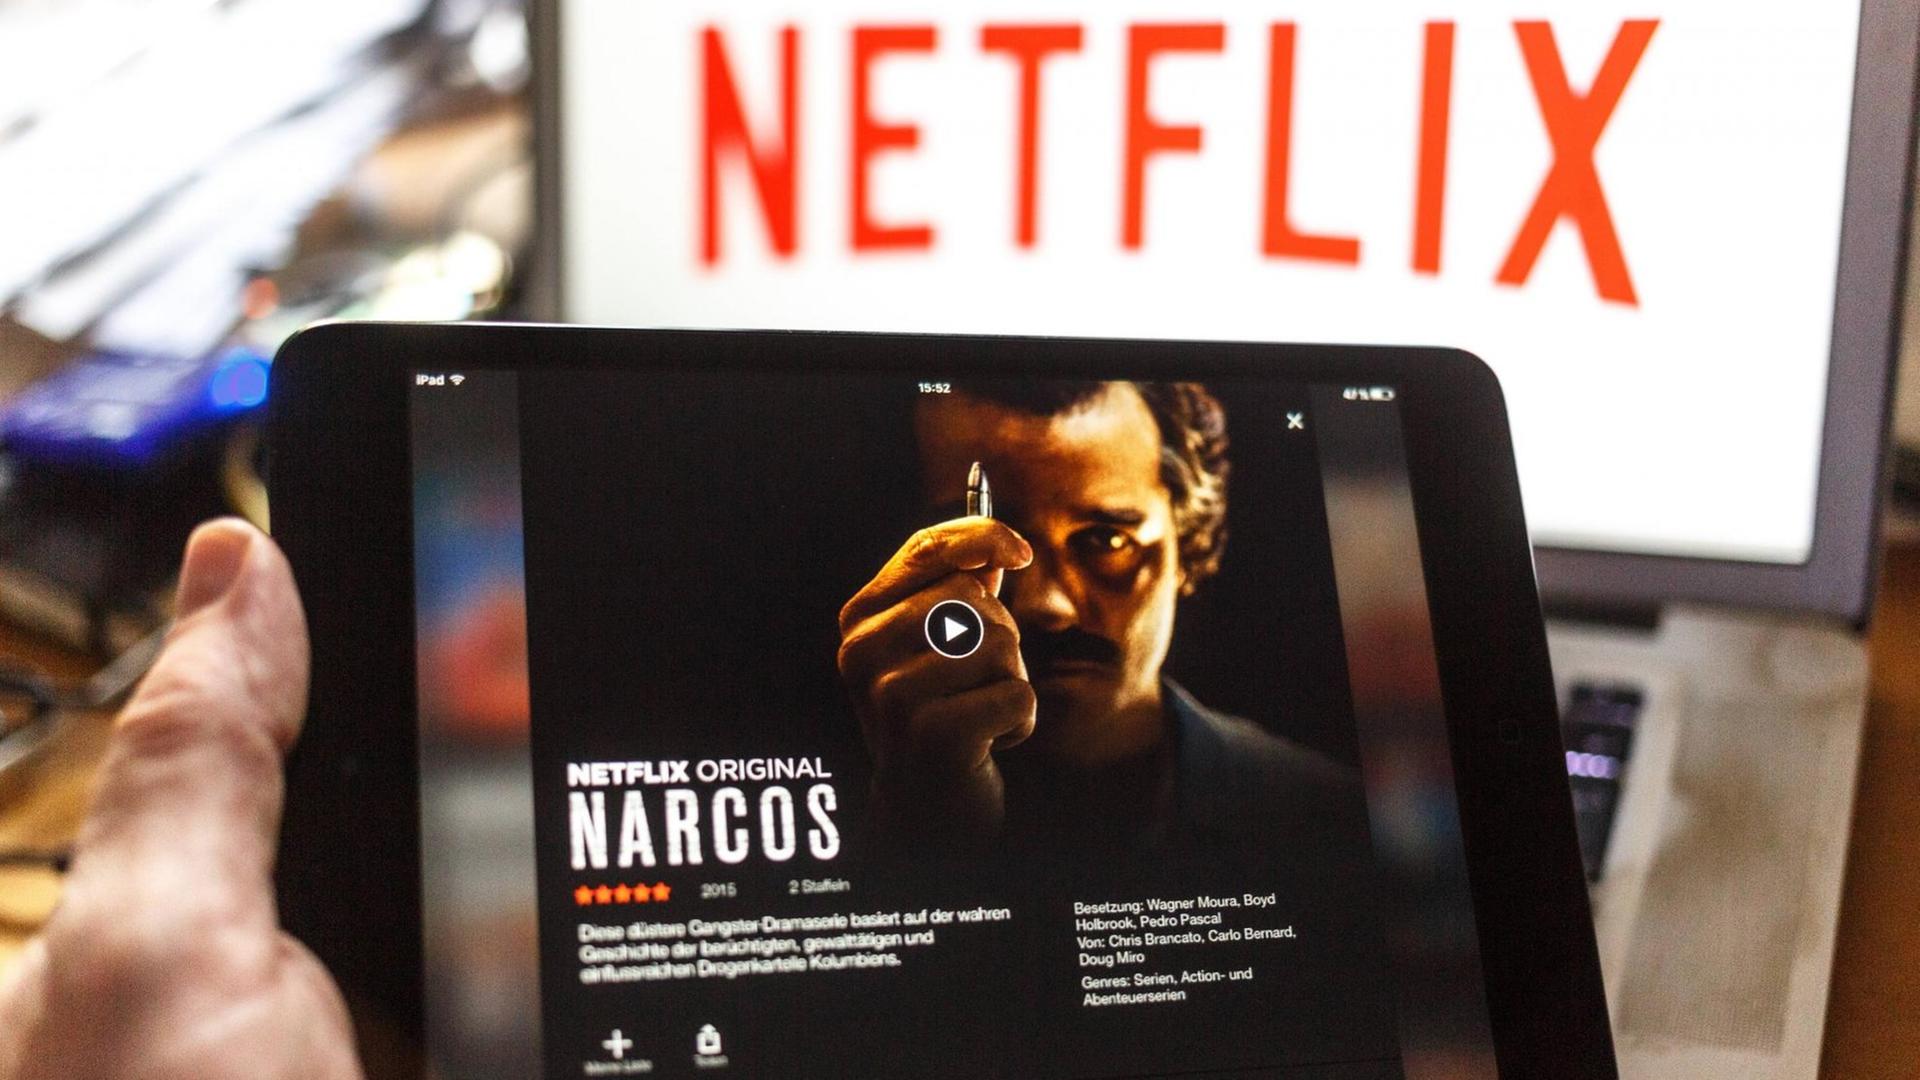 Ein iPad mit "Narcos" wird ins Bild gehalten, im Hintergrund ist der Schriftzug Netflix zu sehen.